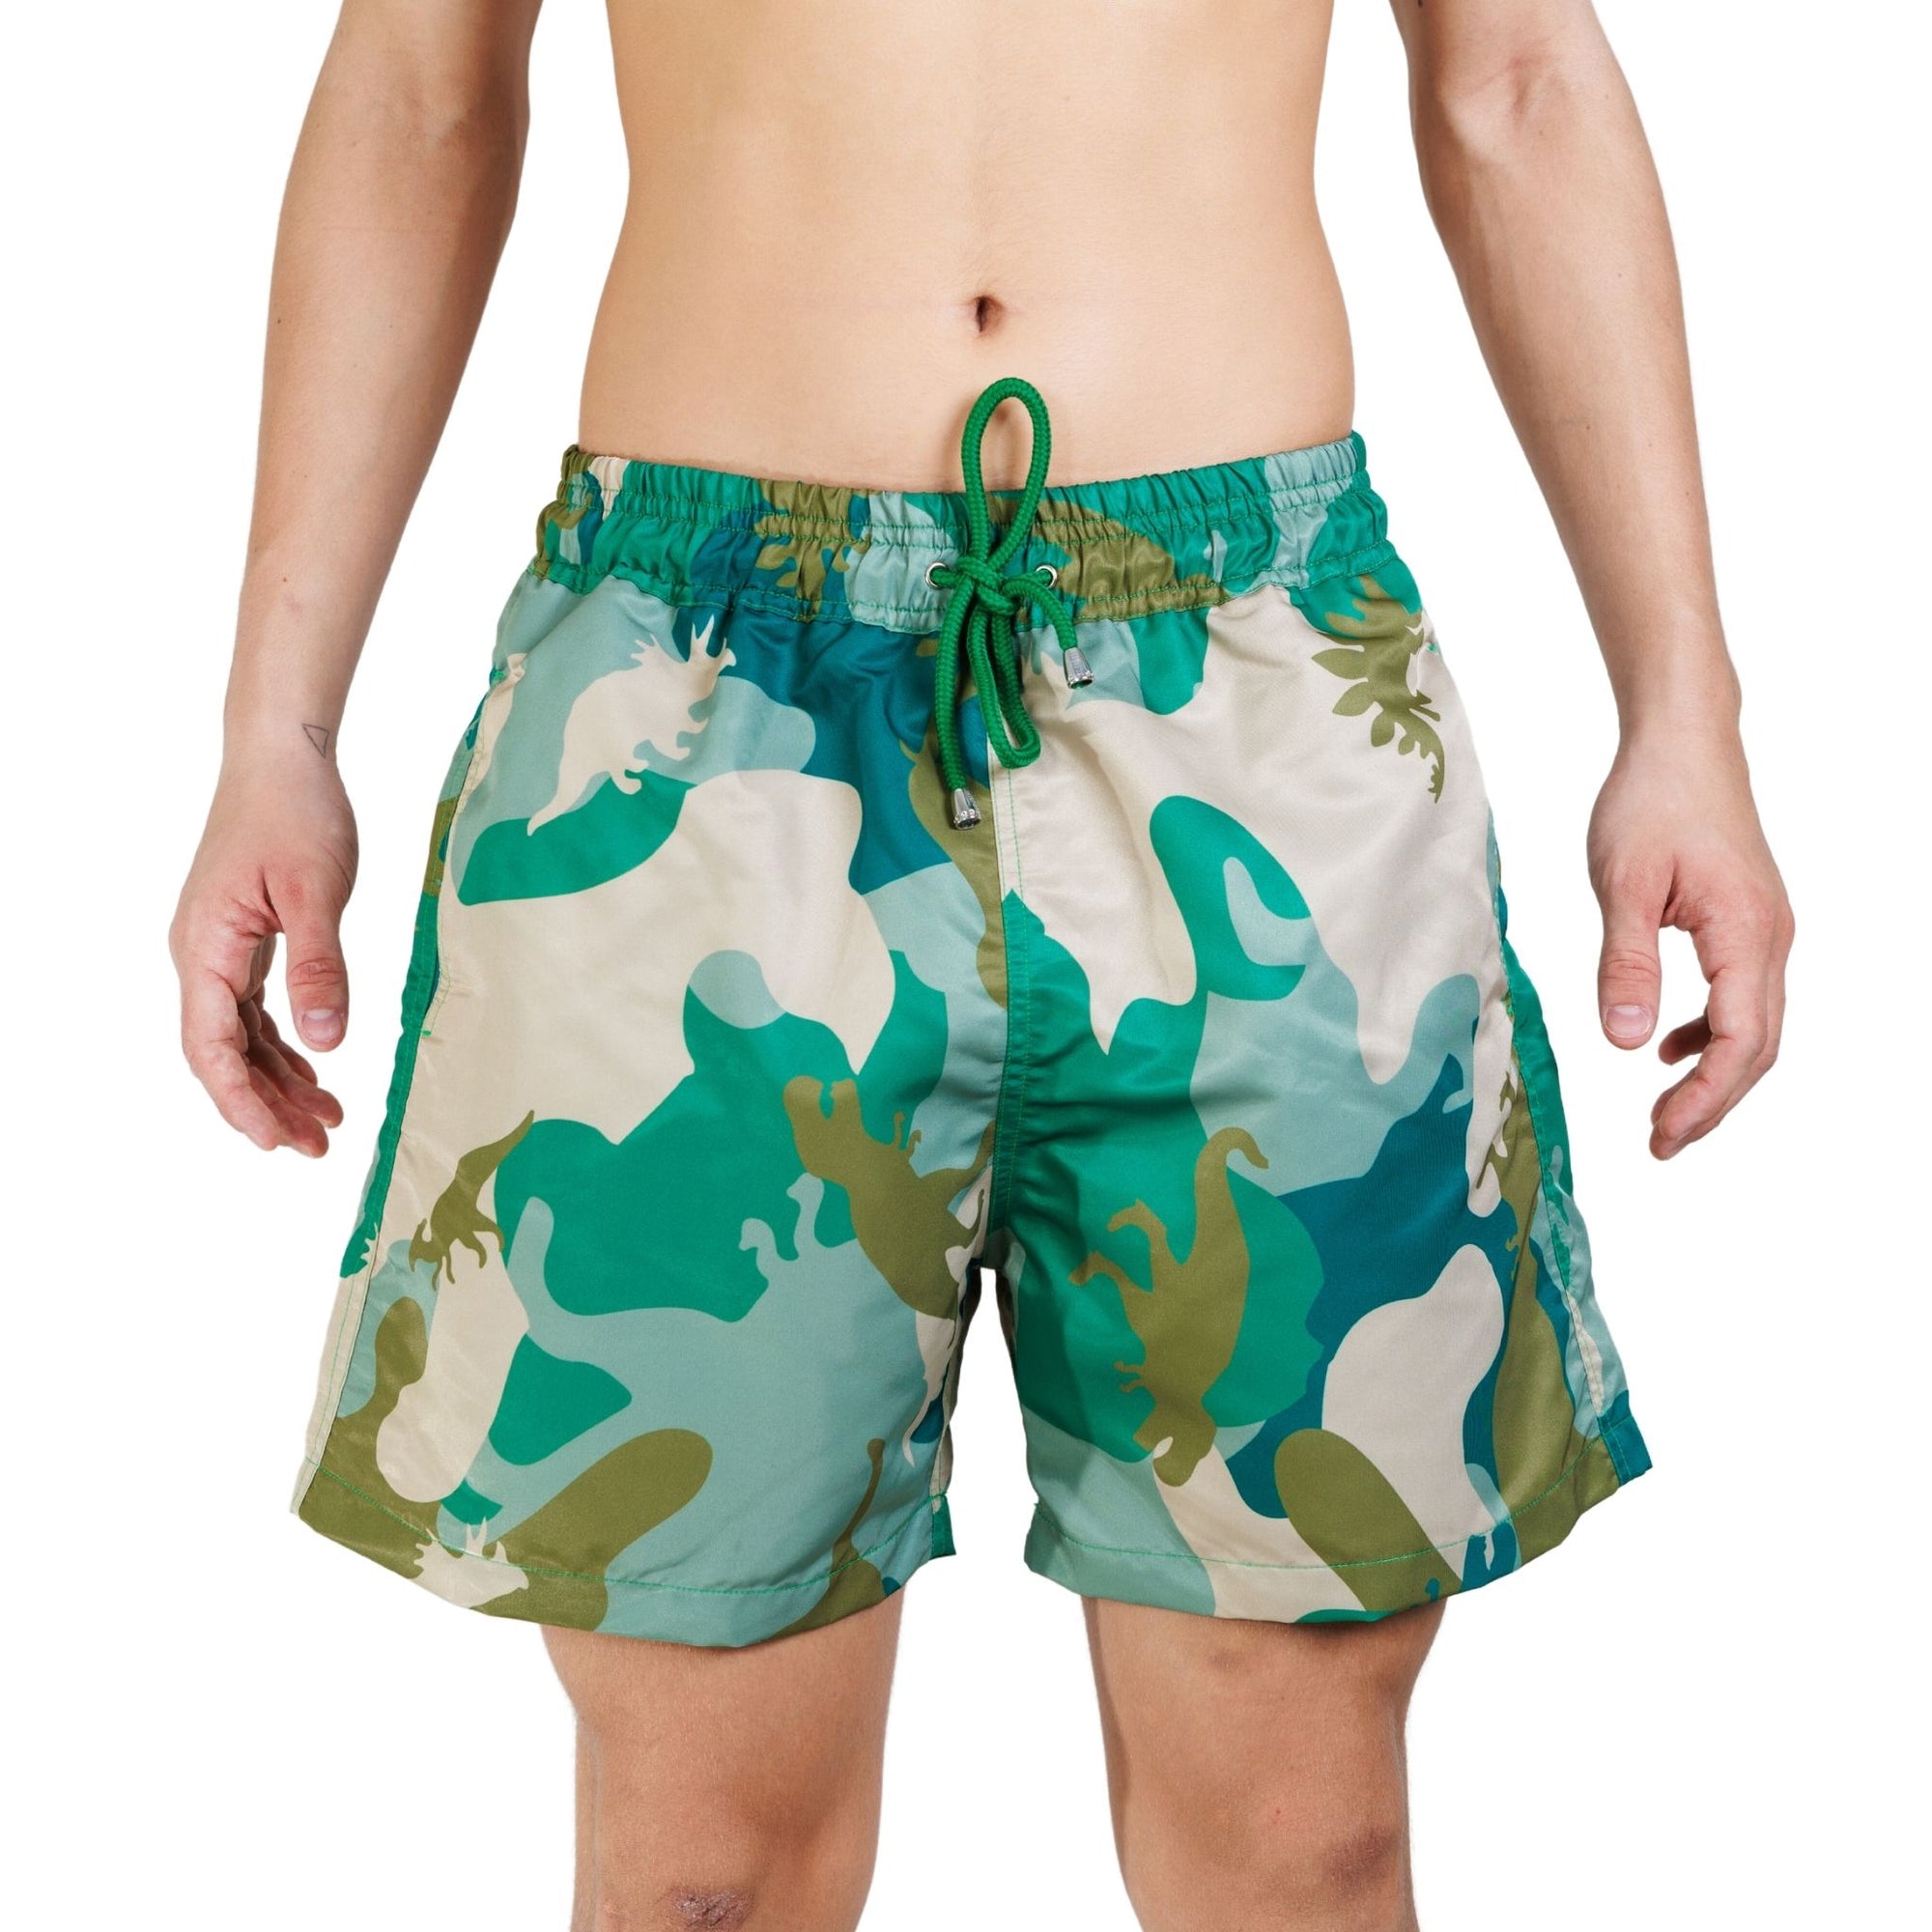 Military Board Shorts - Bistro StTropez